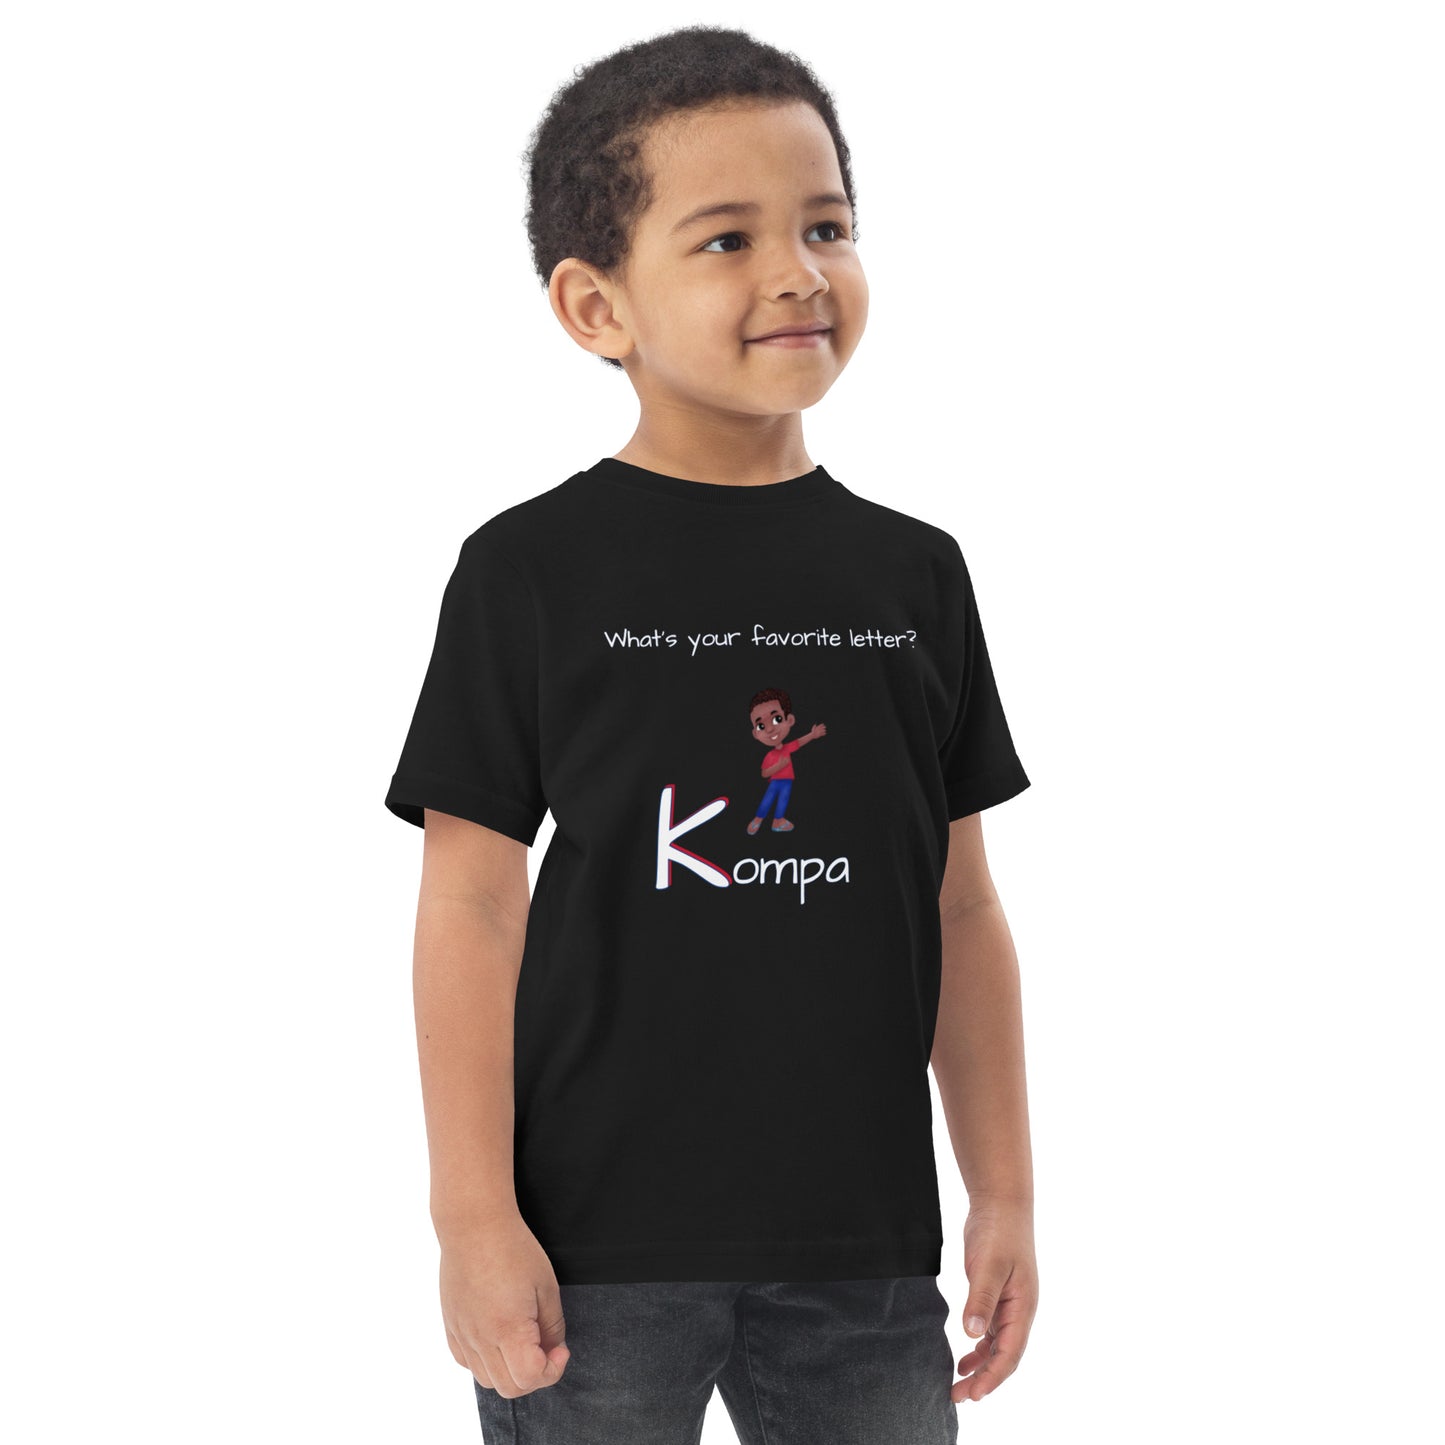 CAF4Kids Black Toddler T-shirt - Letter K